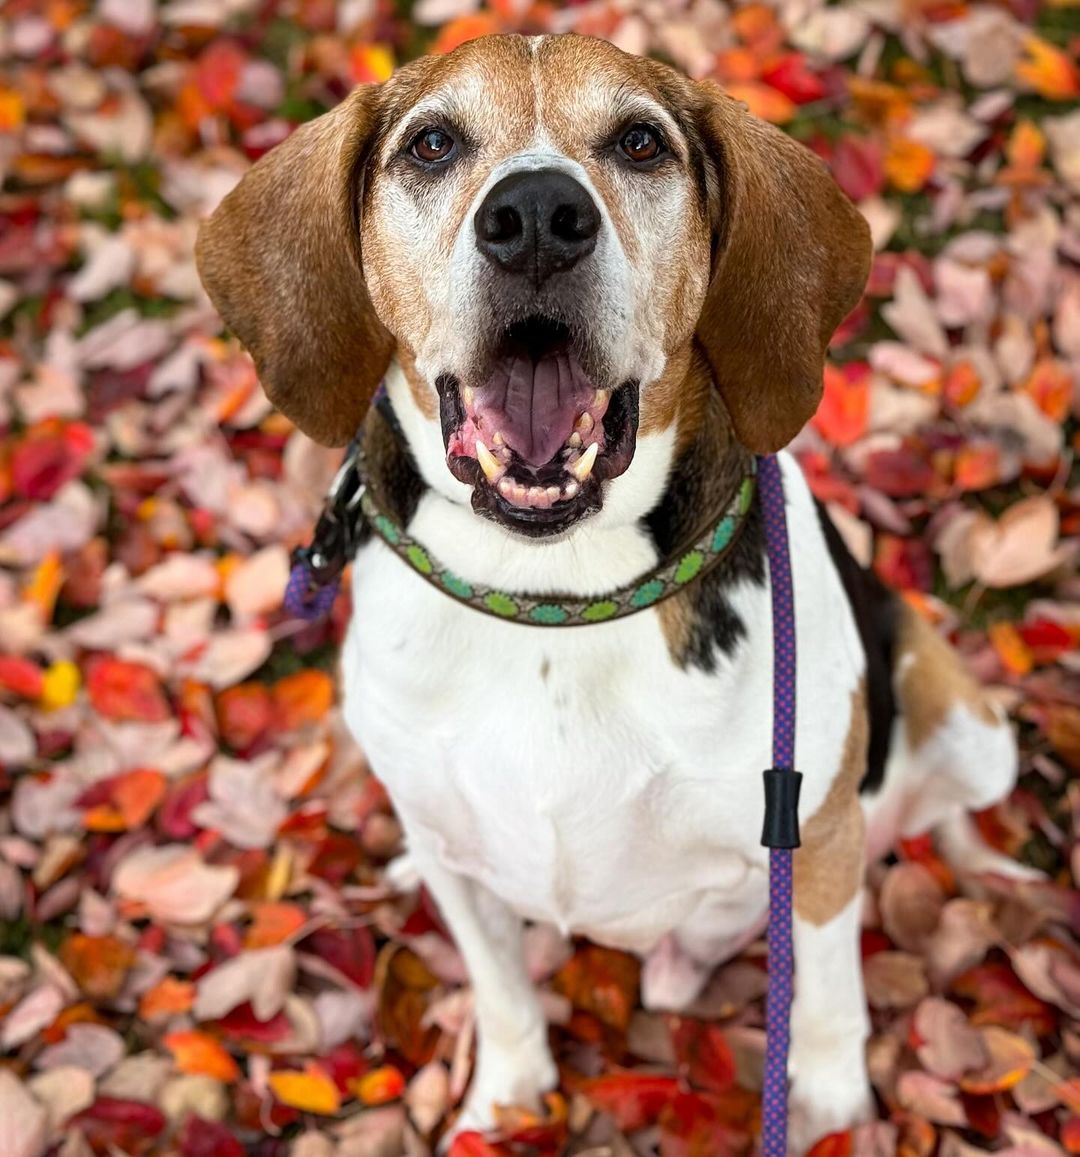 photo of senior dog sitting on leaves